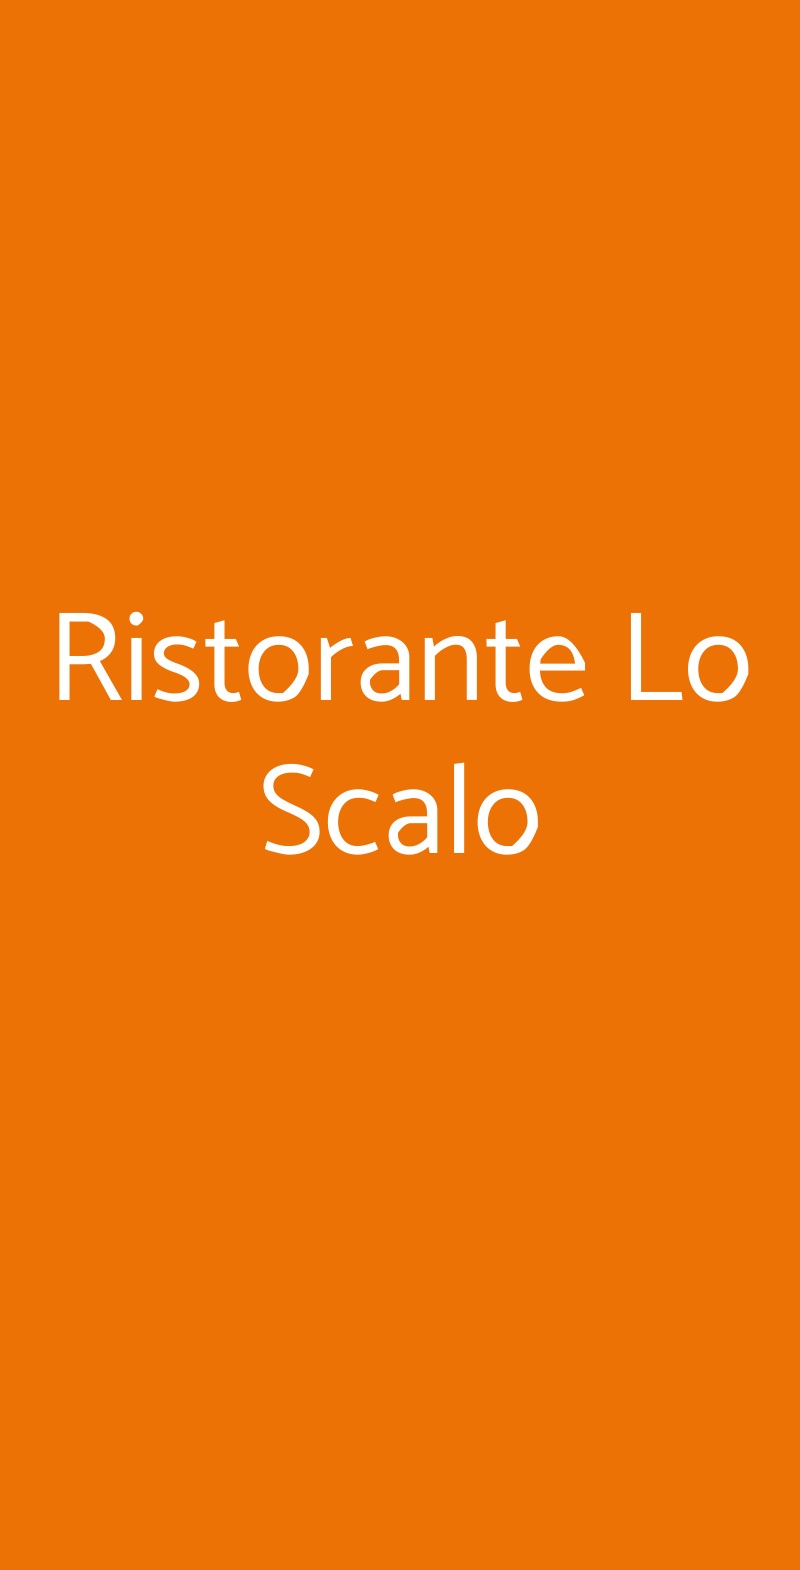 Ristorante Lo Scalo Cannobio menù 1 pagina